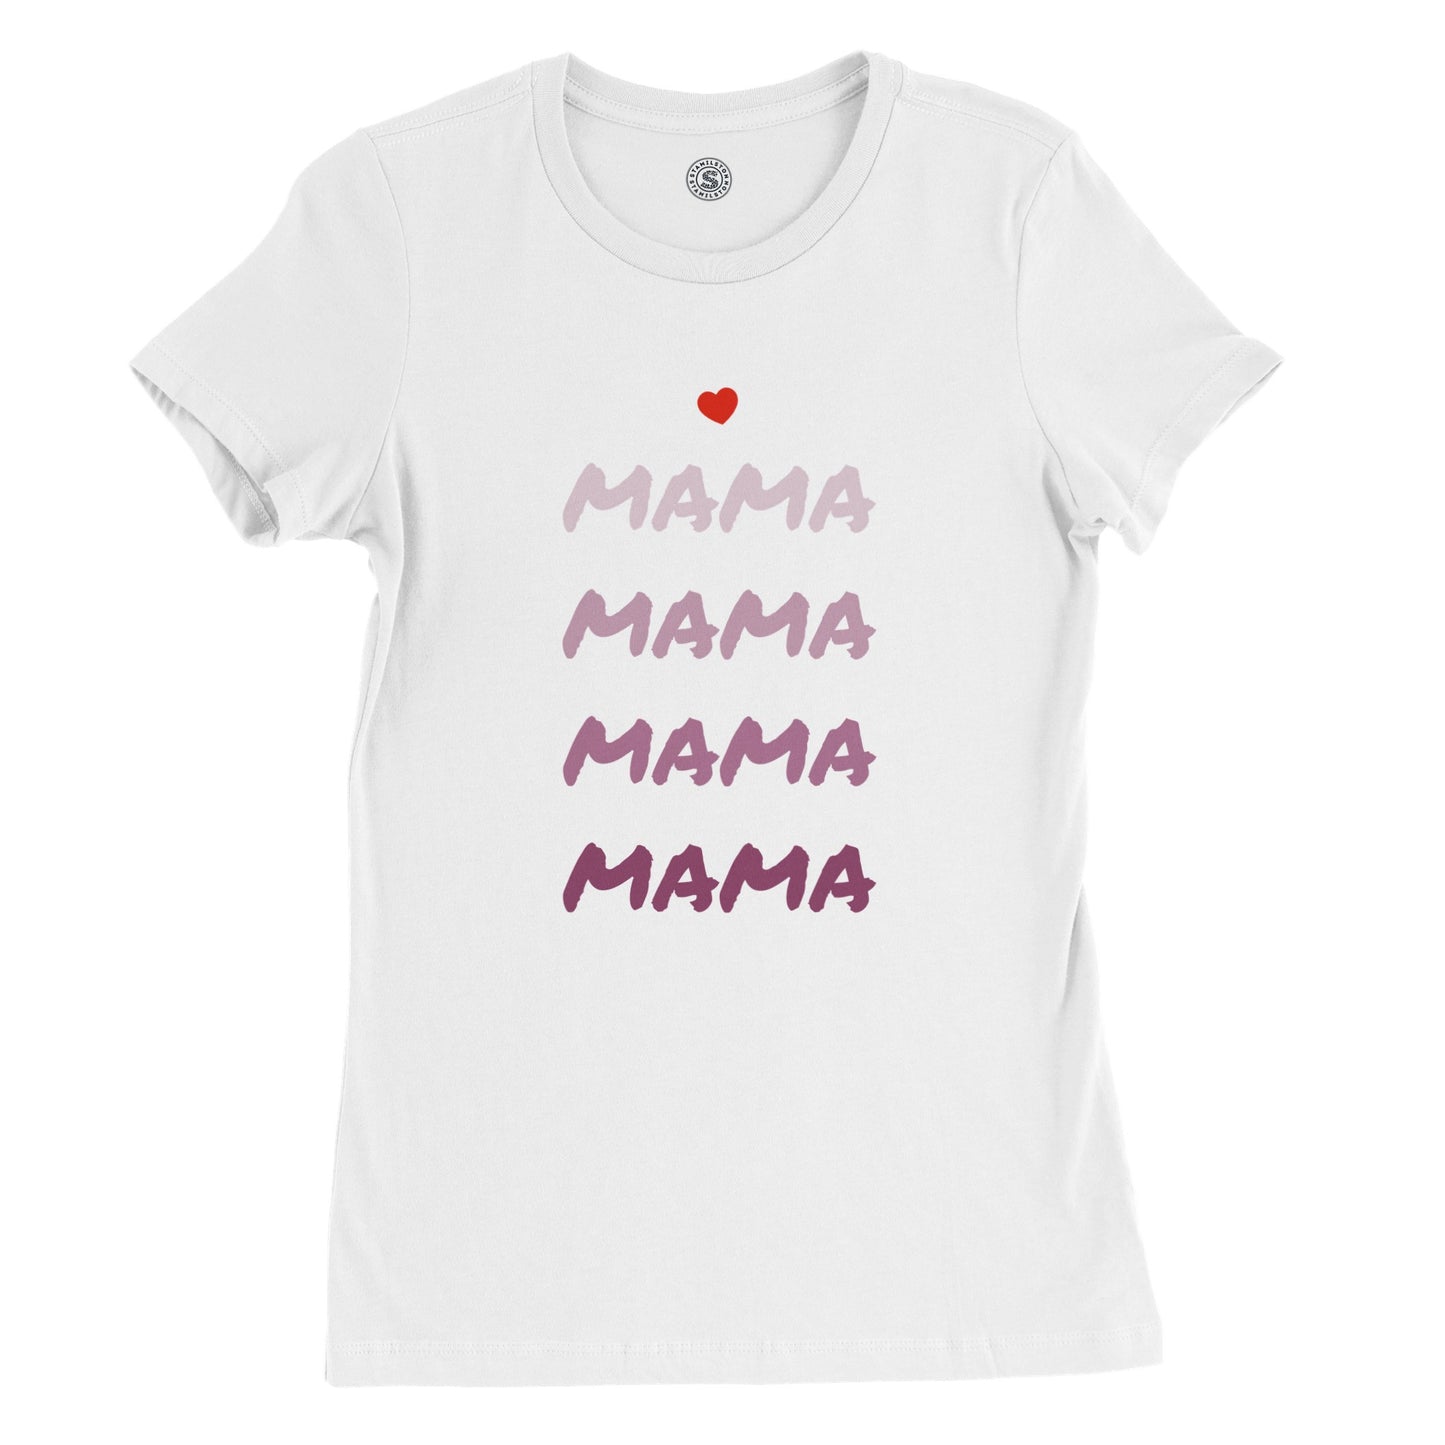 Mammas t-shirt